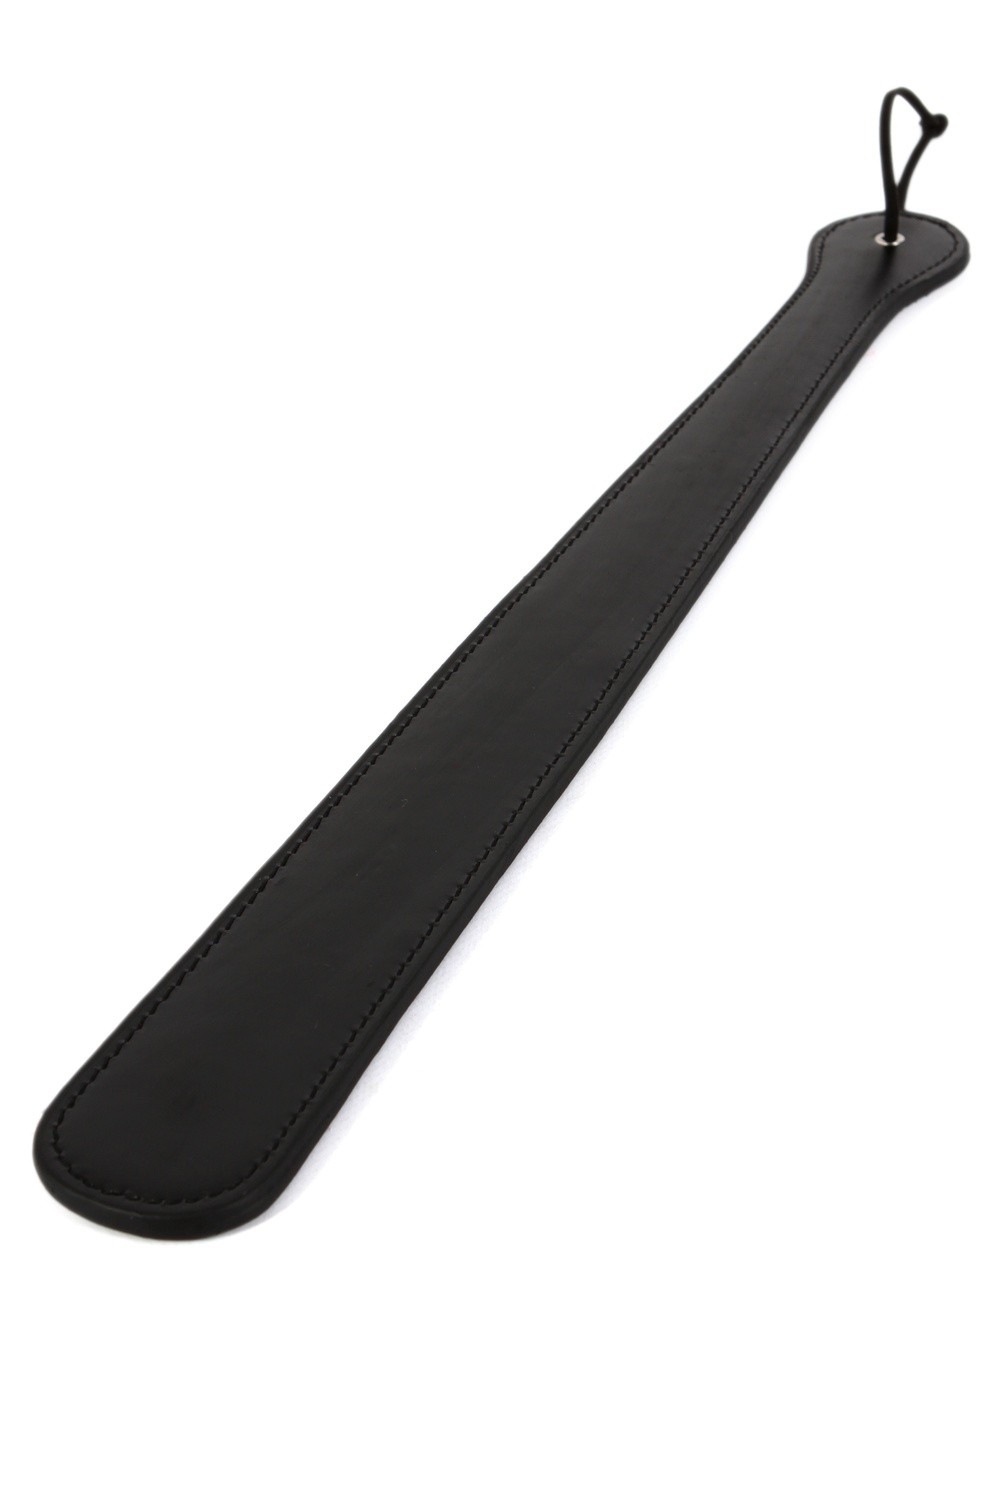 Paddle aspect cuir noir 48 cm